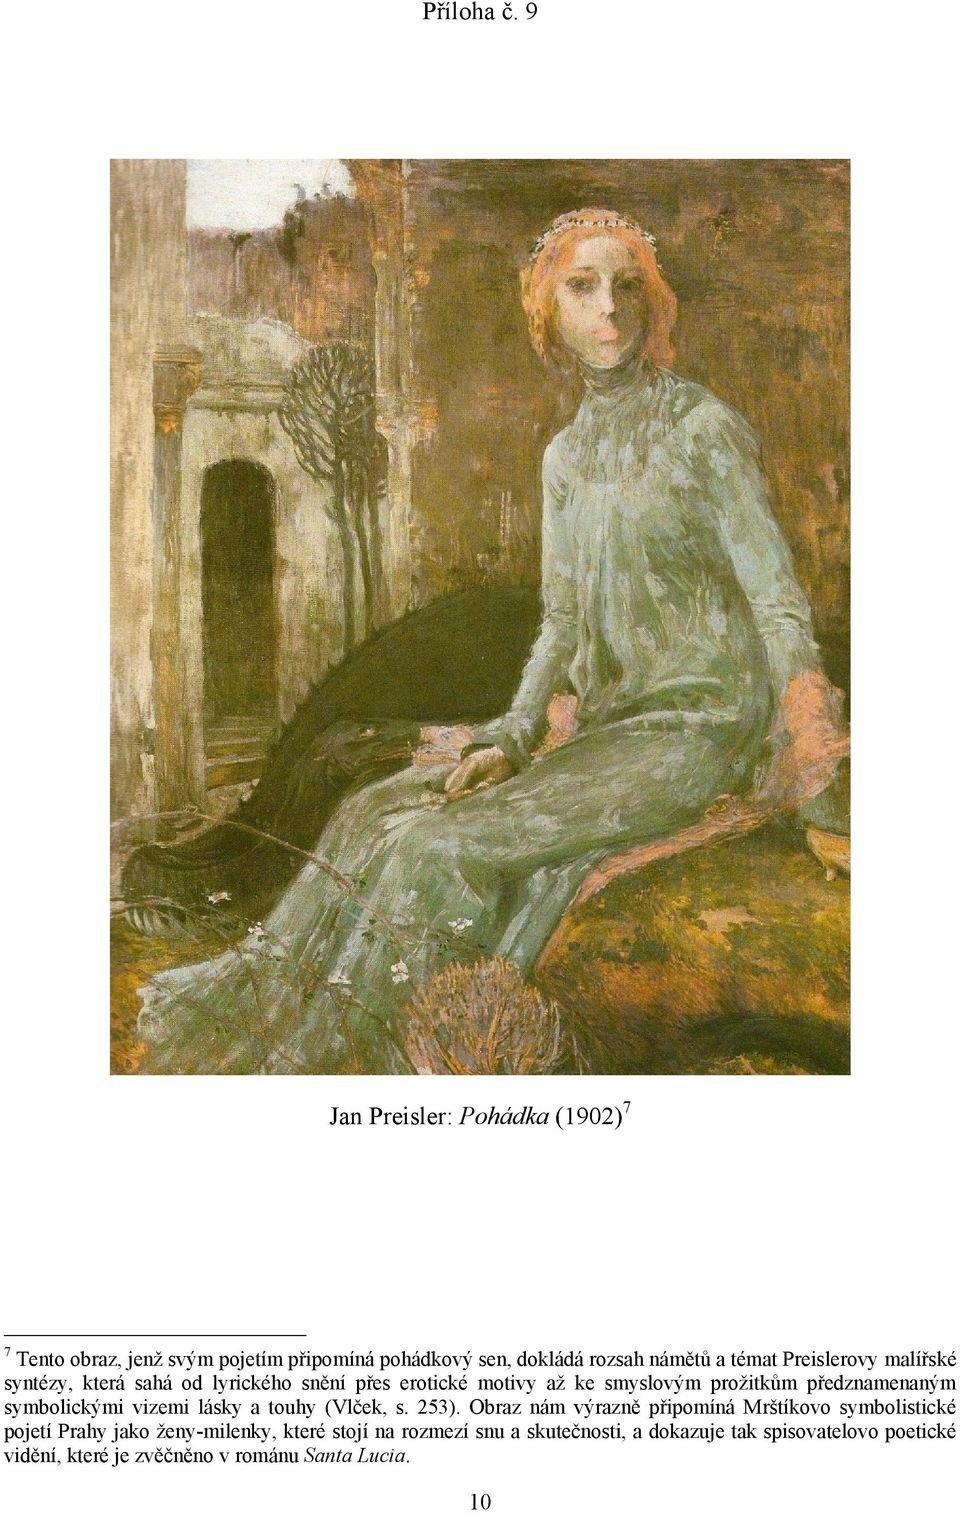 Preislerovy malířské syntézy, která sahá od lyrického snění přes erotické motivy až ke smyslovým prožitkům předznamenaným